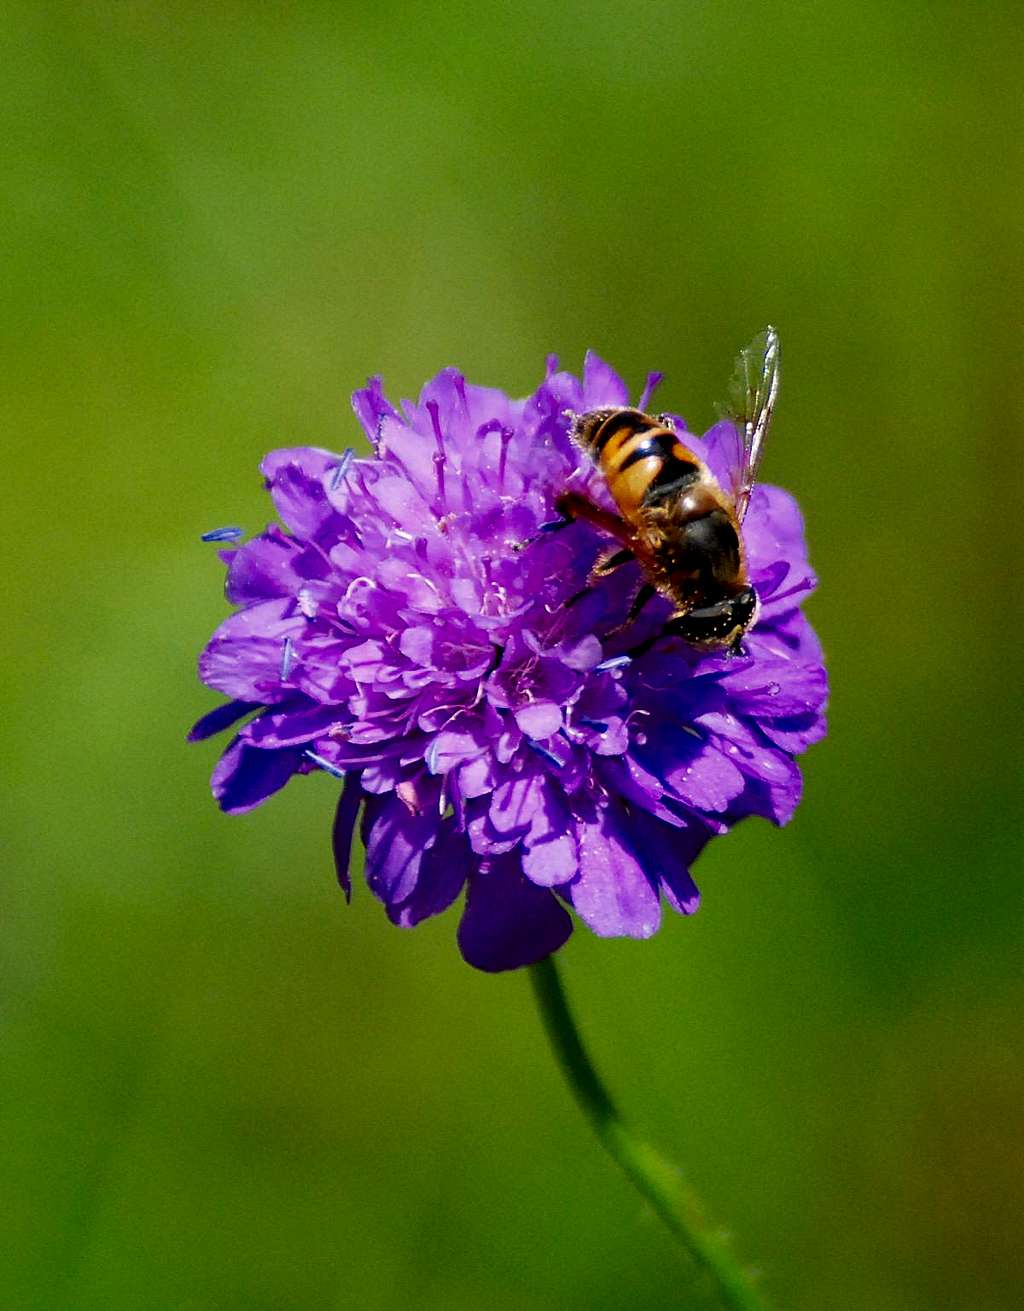 Bee on an Aravis flower